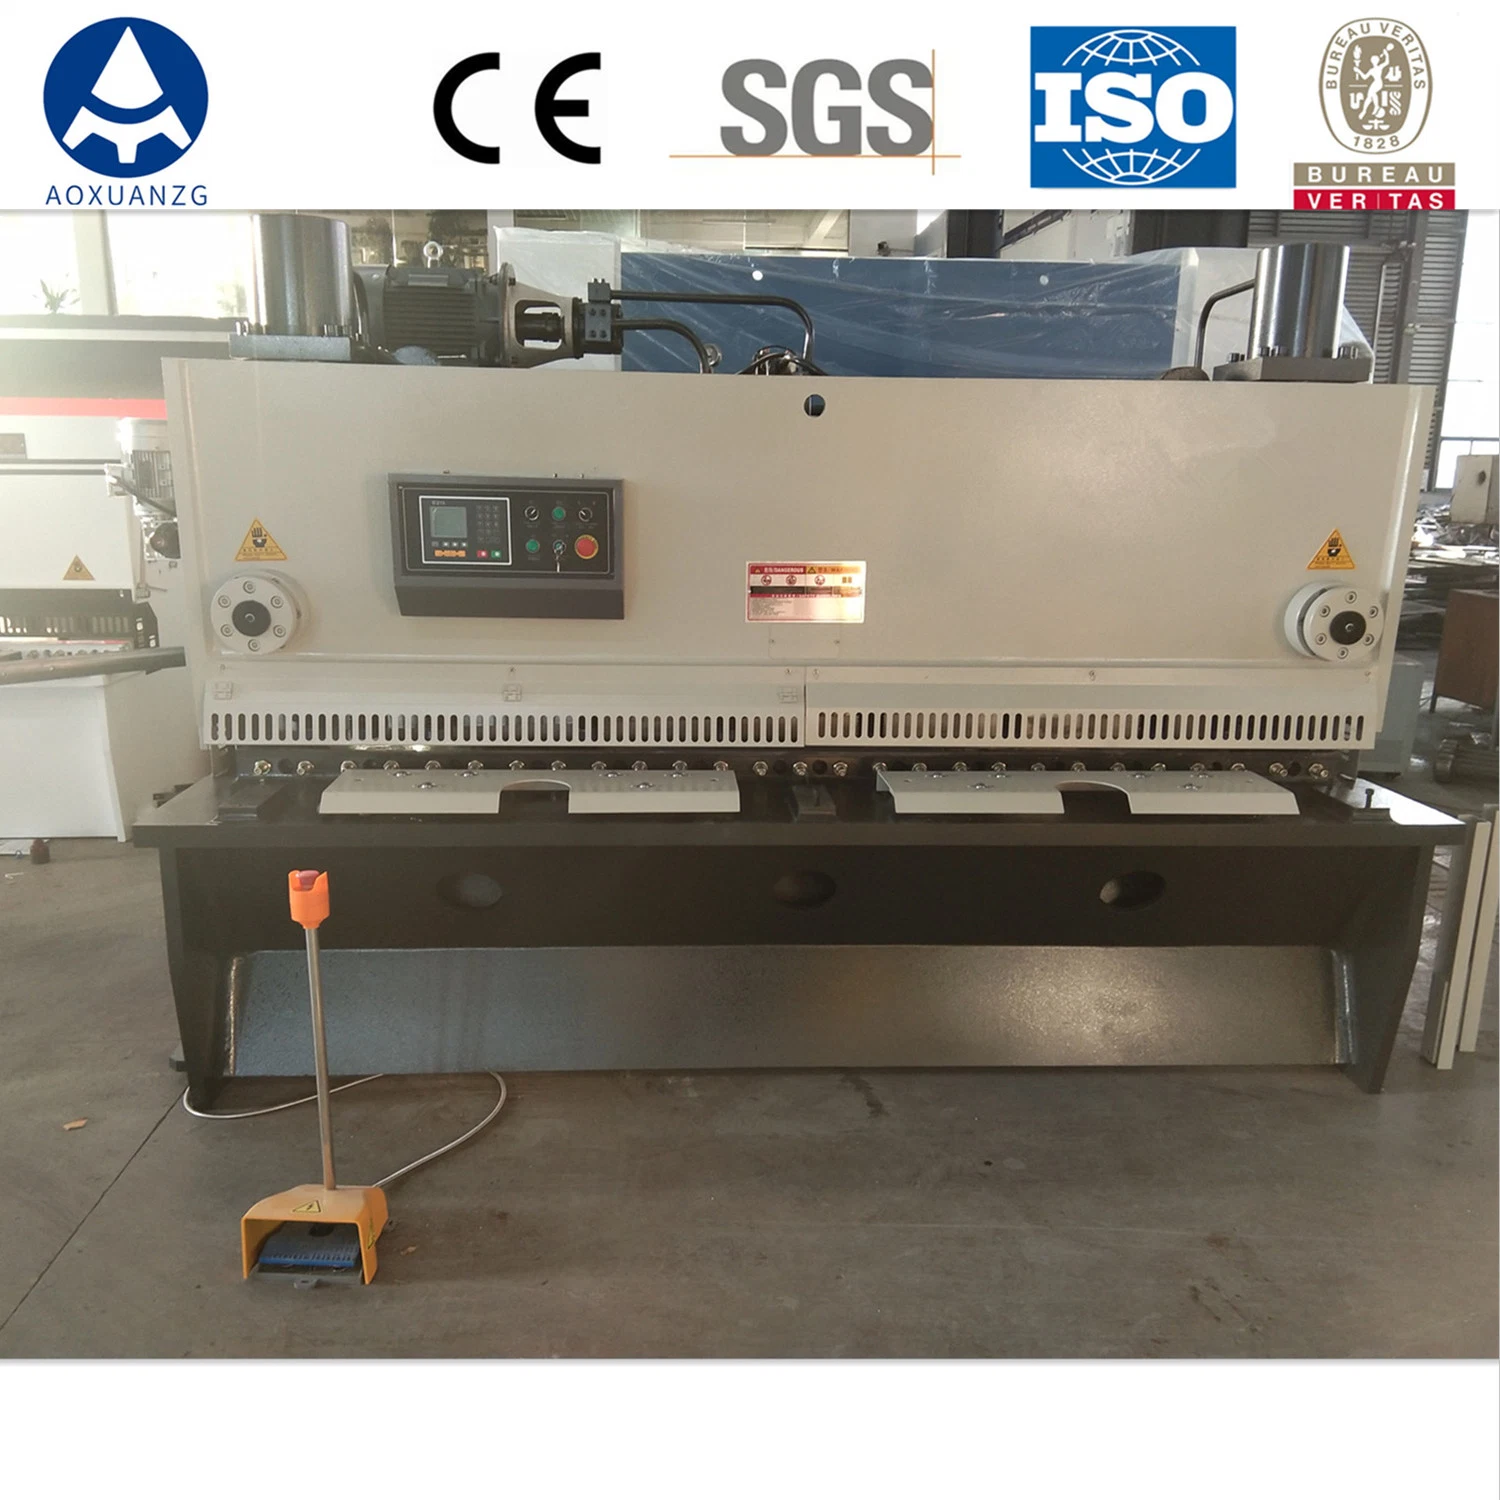 Control automático de la placa de lámina metálica de corte CNC Máquina de esquila la esquila de guillotina hidráulica Máquina